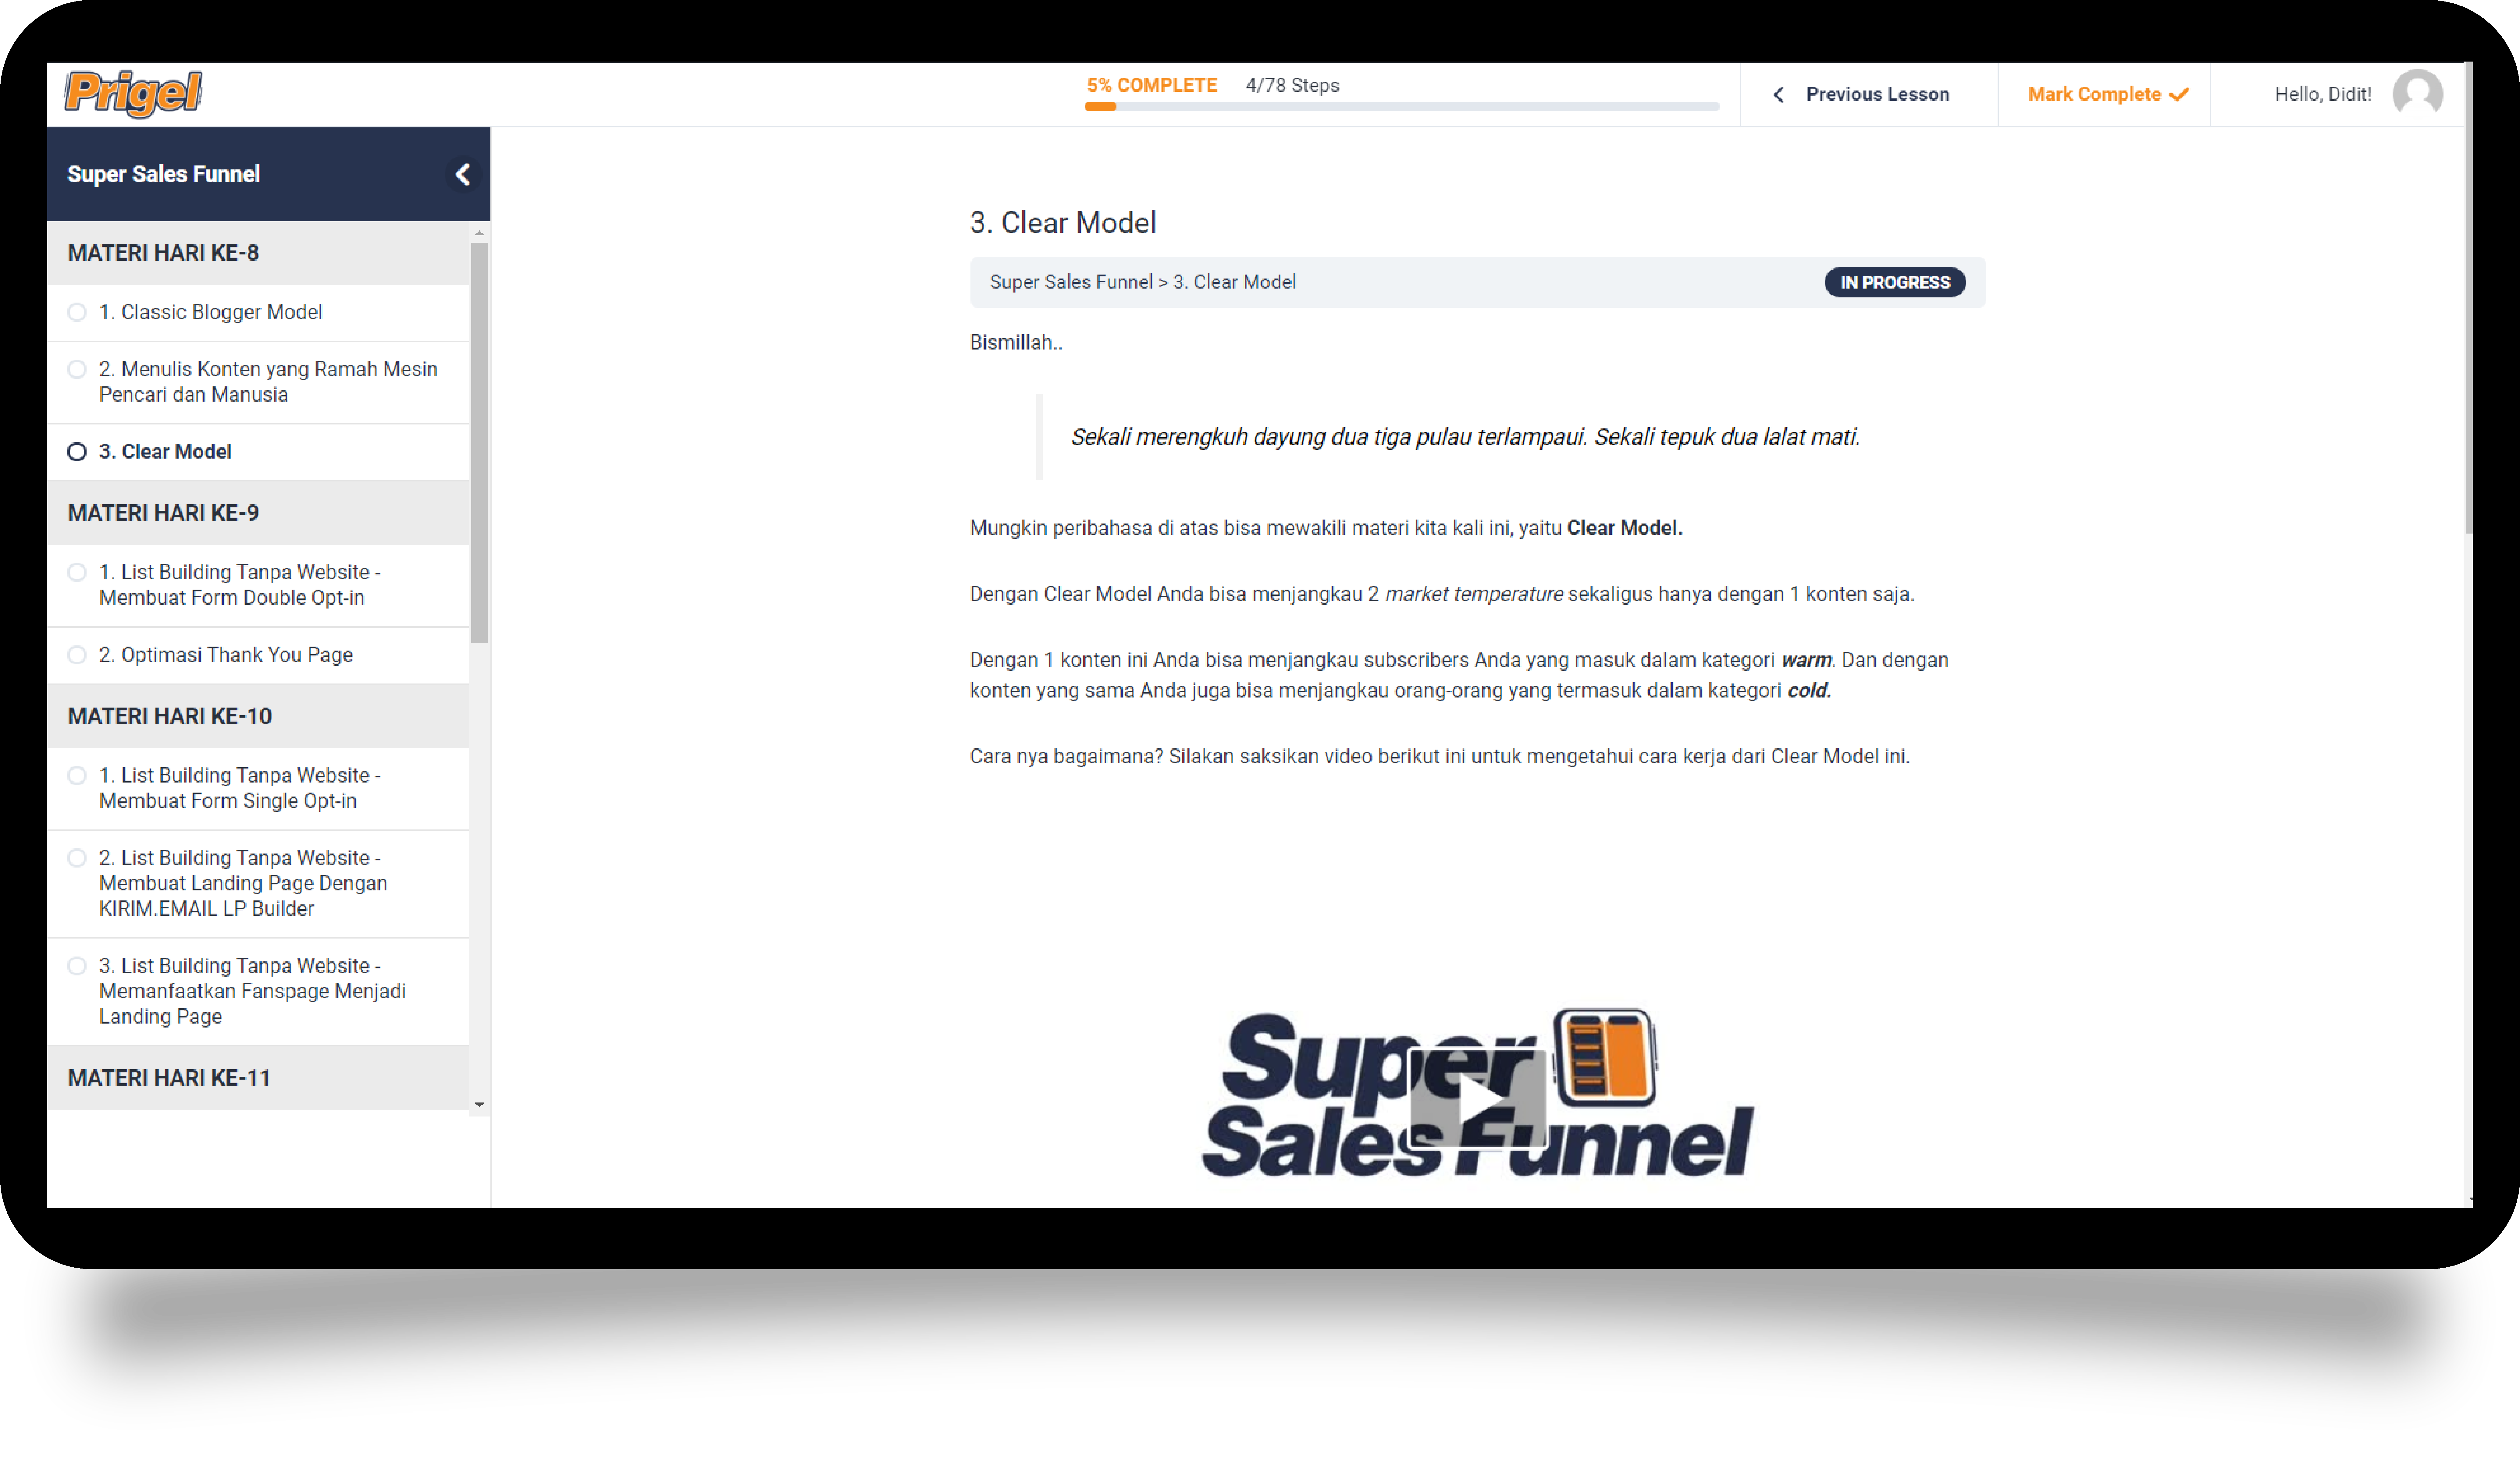 Super Sales Funnel – Program Pelatihan Online Dari KIRIM.EMAIL - 25